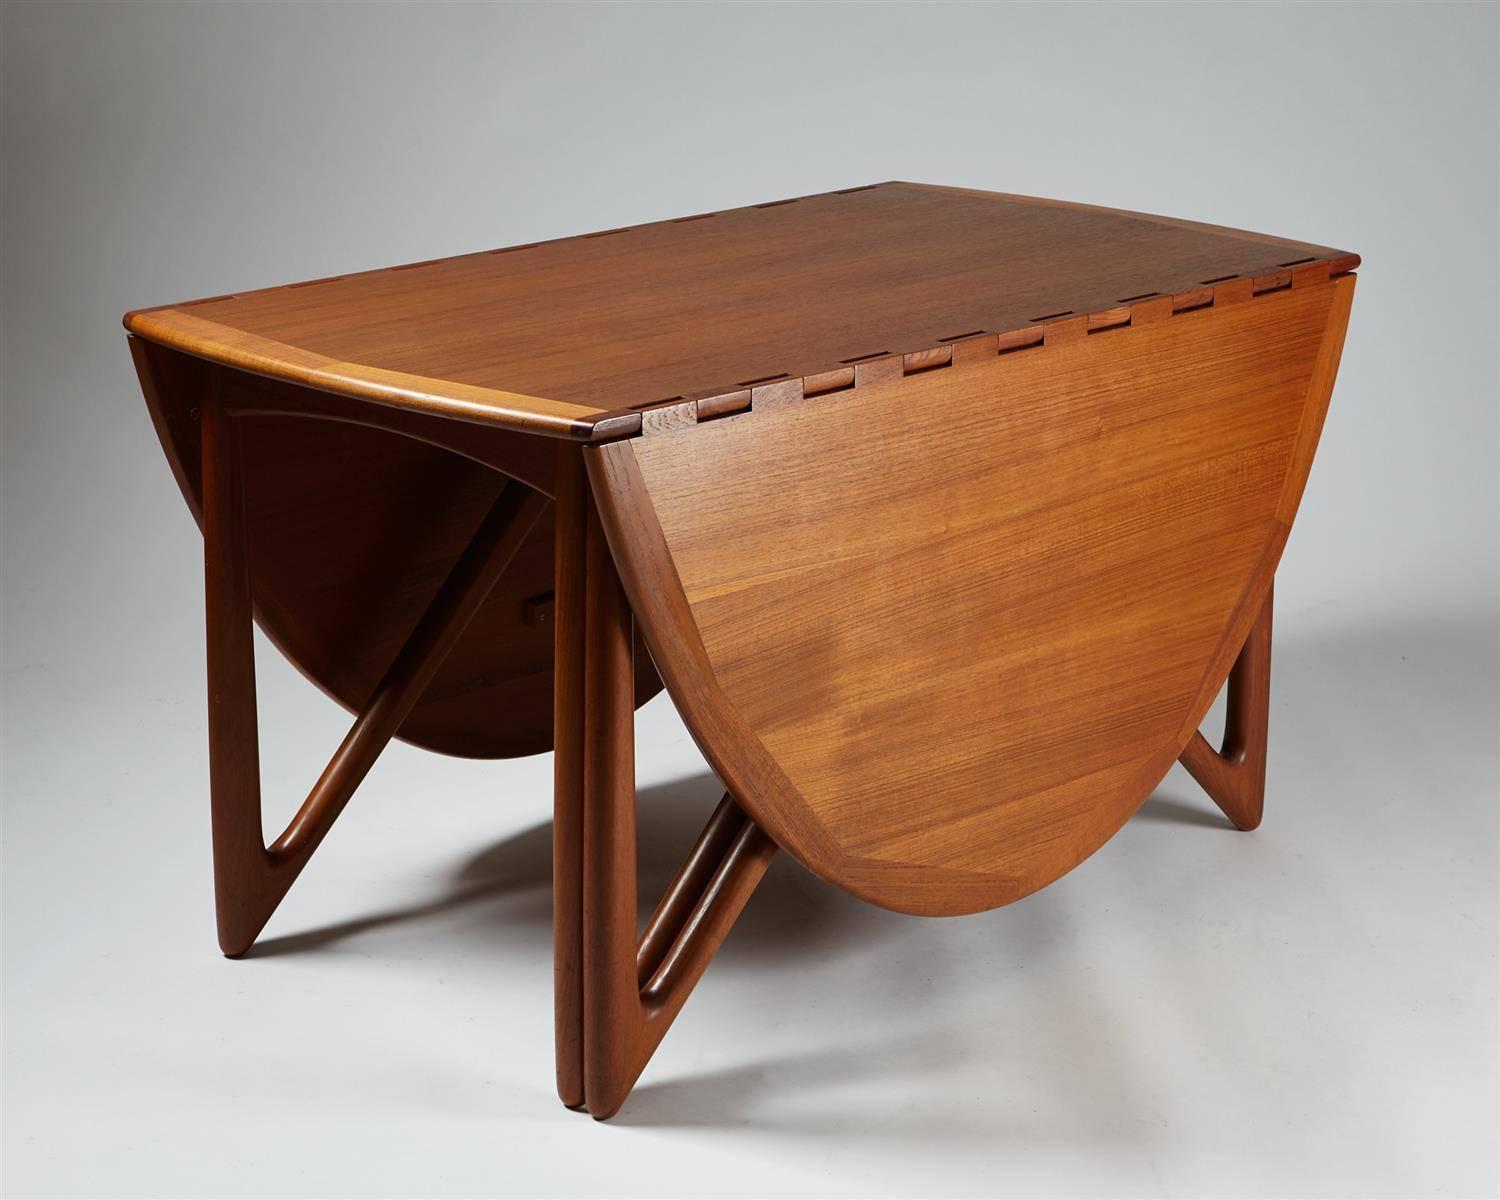 Table de salle à manger conçue par Niels Koefoed,
Danemark, années 1960.

Teck.

Dimensions : 
H : 72,5 cm/ 28 3/4''
Longueur en extension : 196 cm/ 6' 4''
W: 130 cm/ 4' 3''